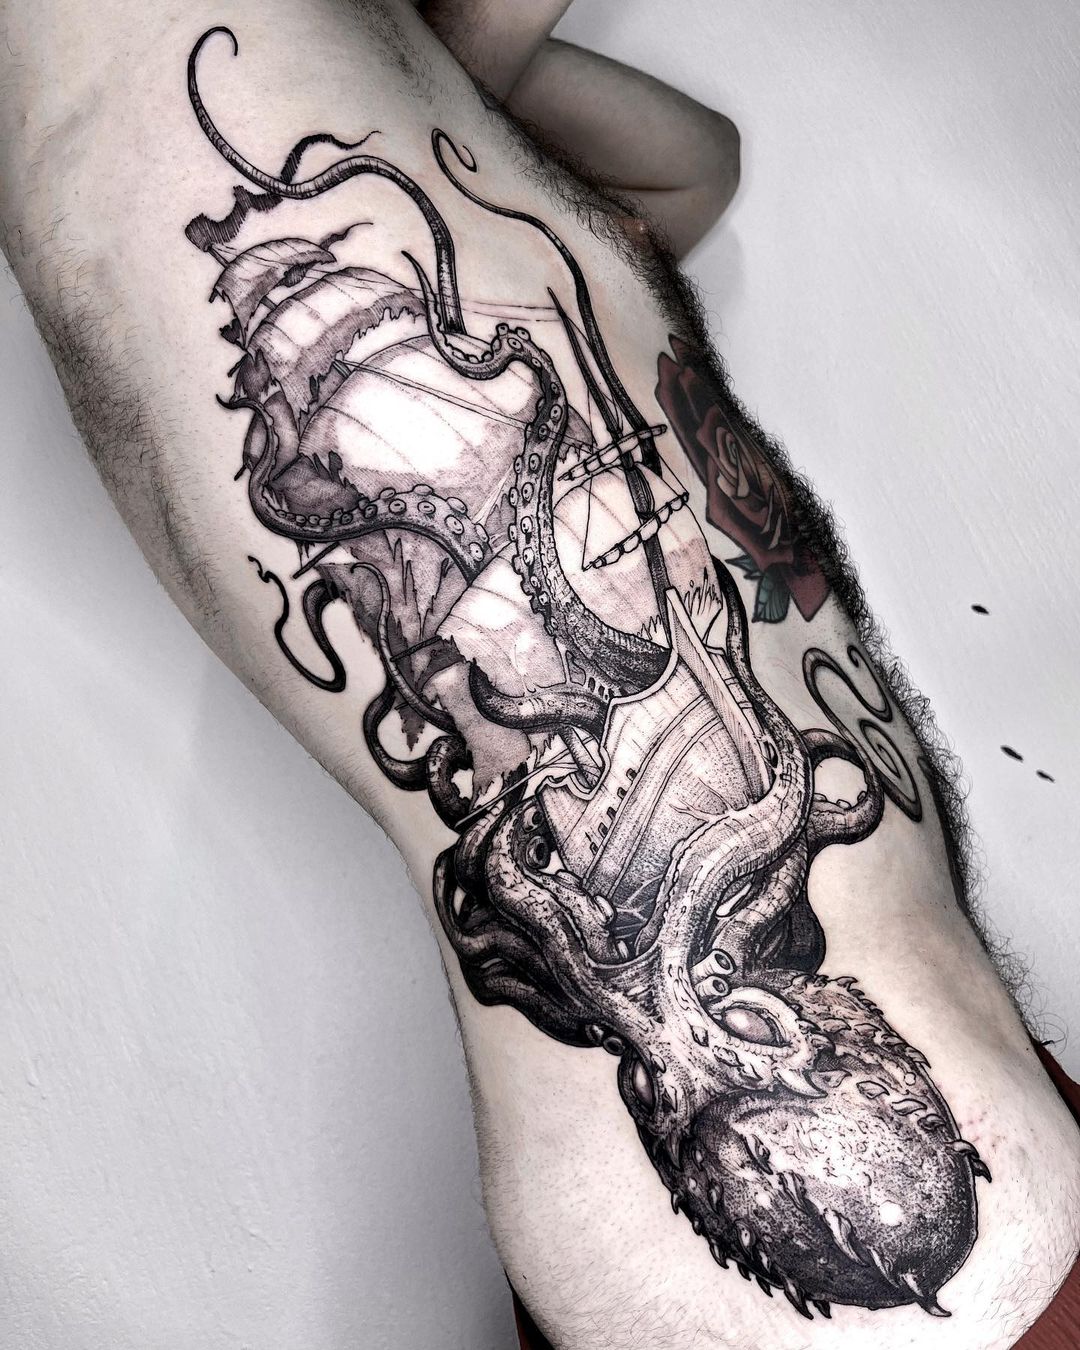 Kraken Tattoo Images  Free Download on Freepik